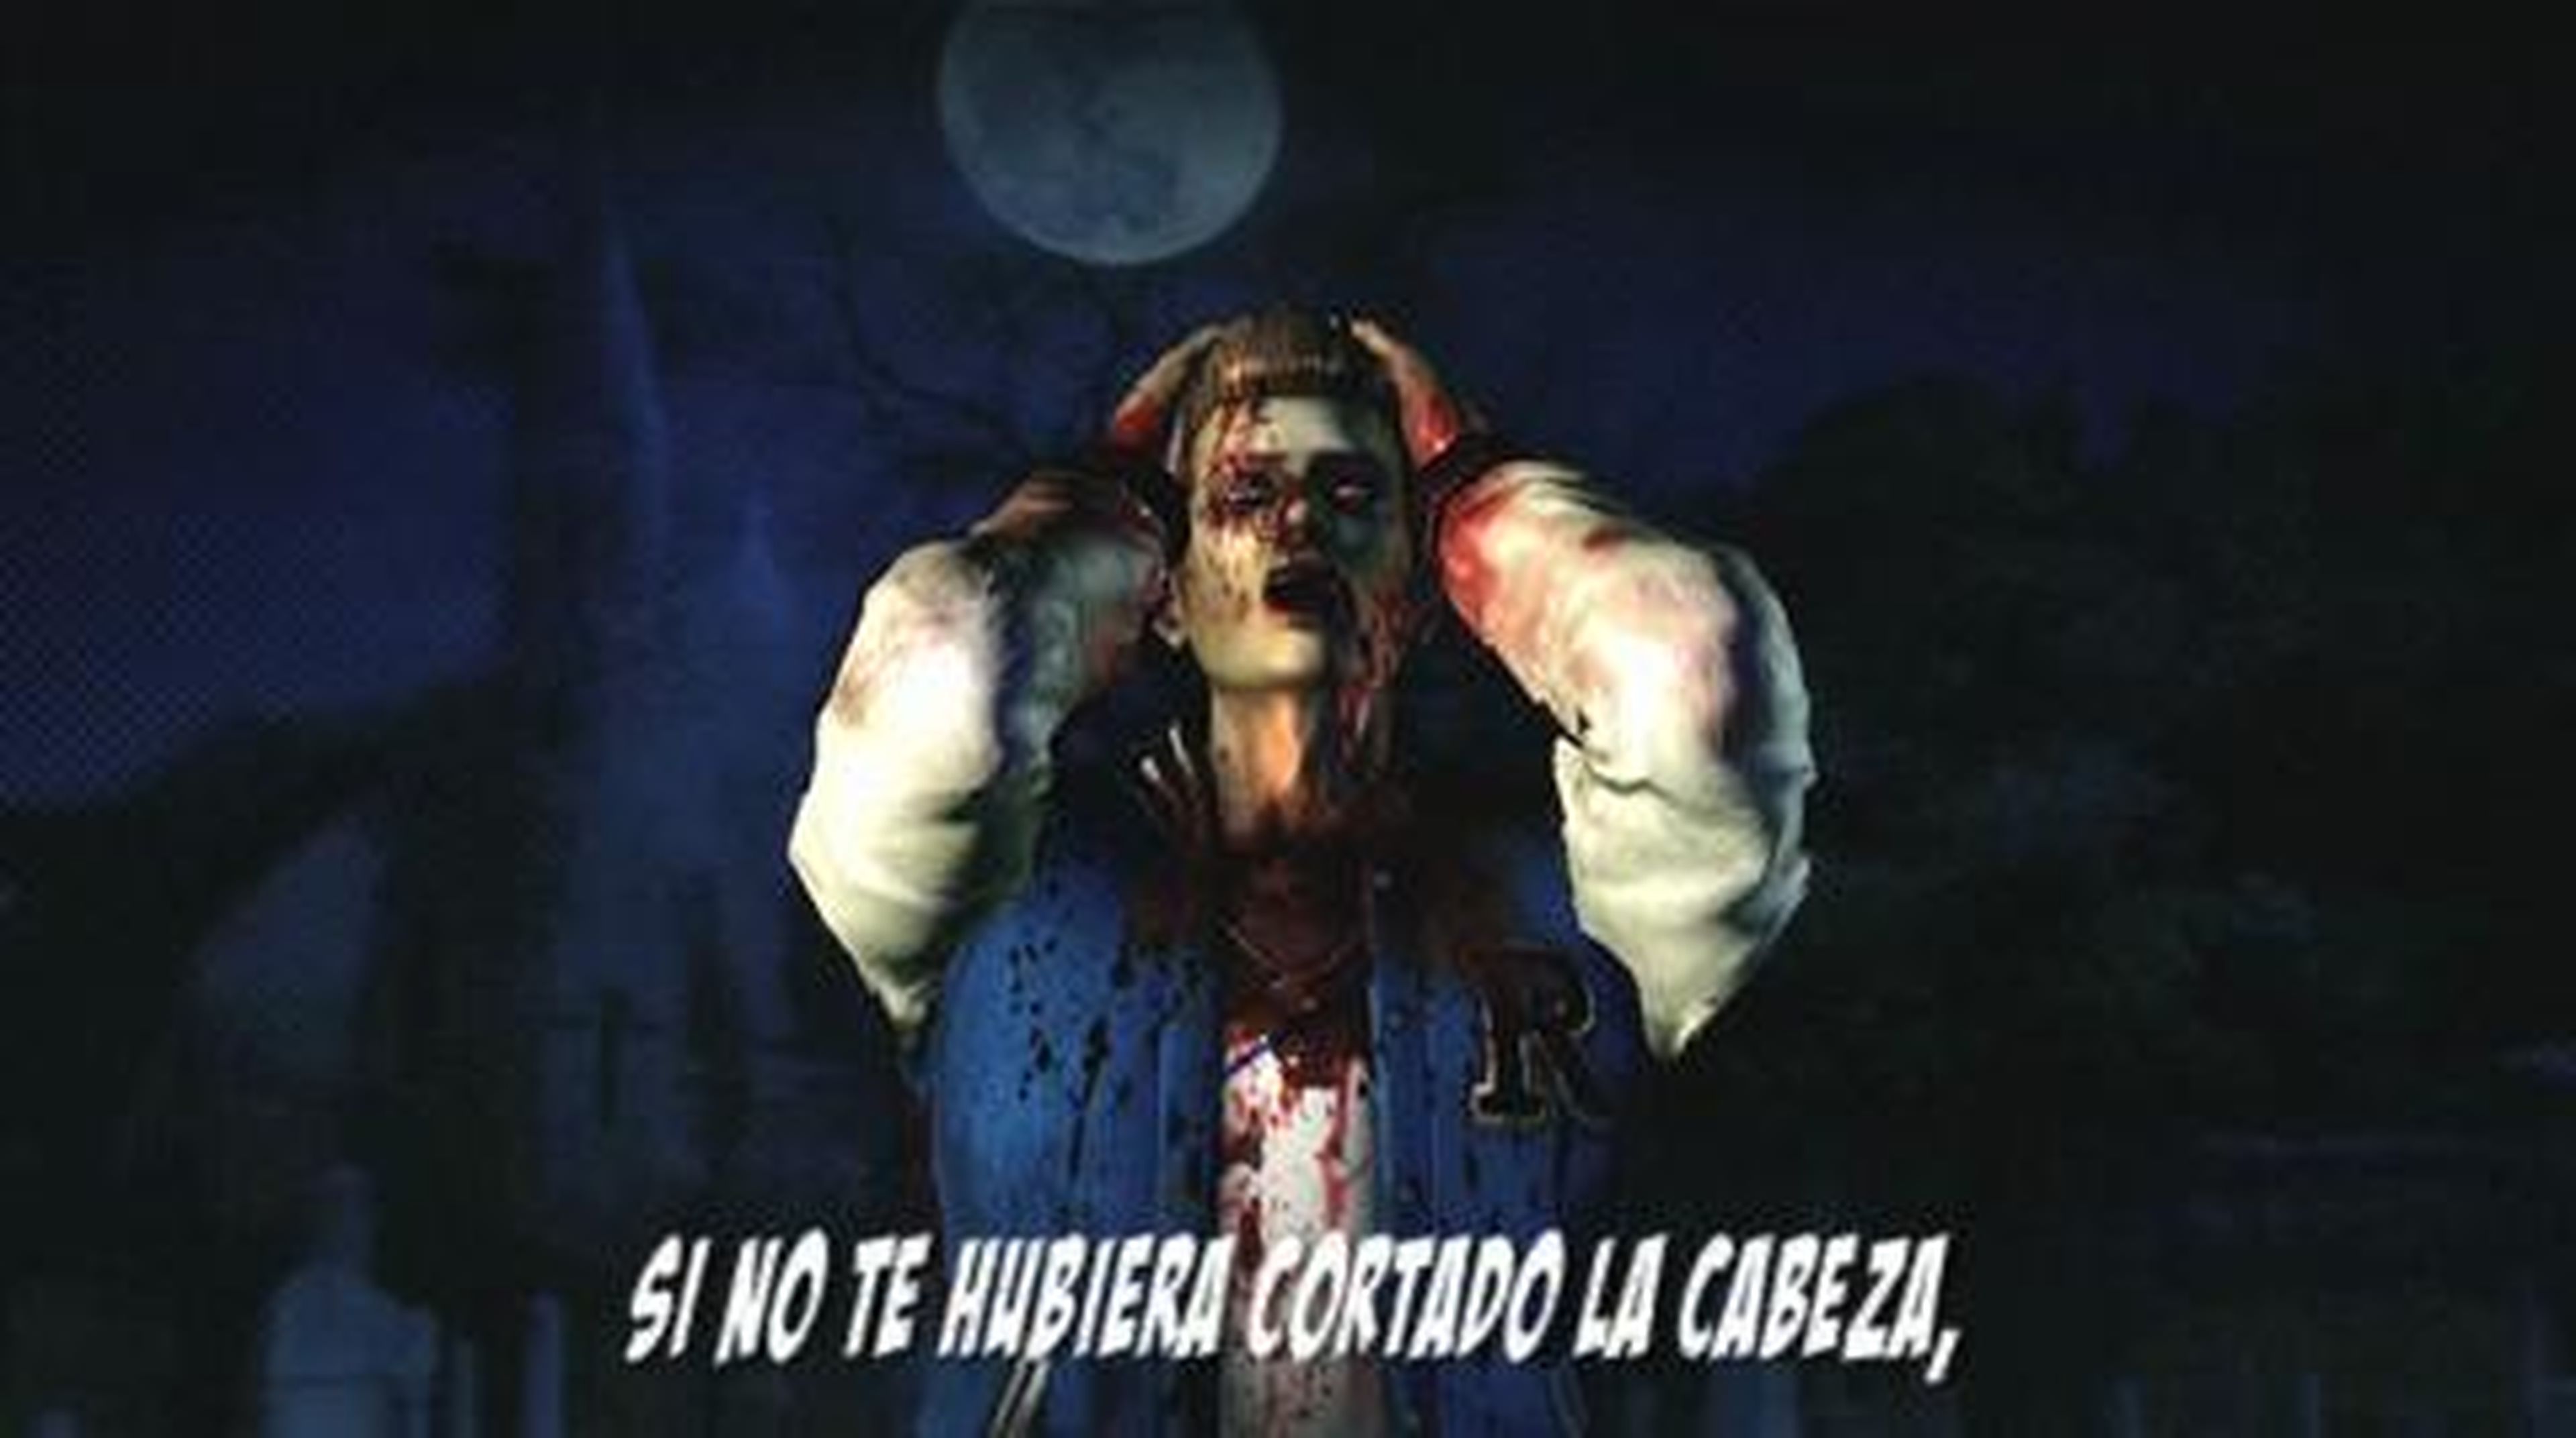 Tráiler amoroso Lollipop Chainsaw (español) en HobbyNews.es